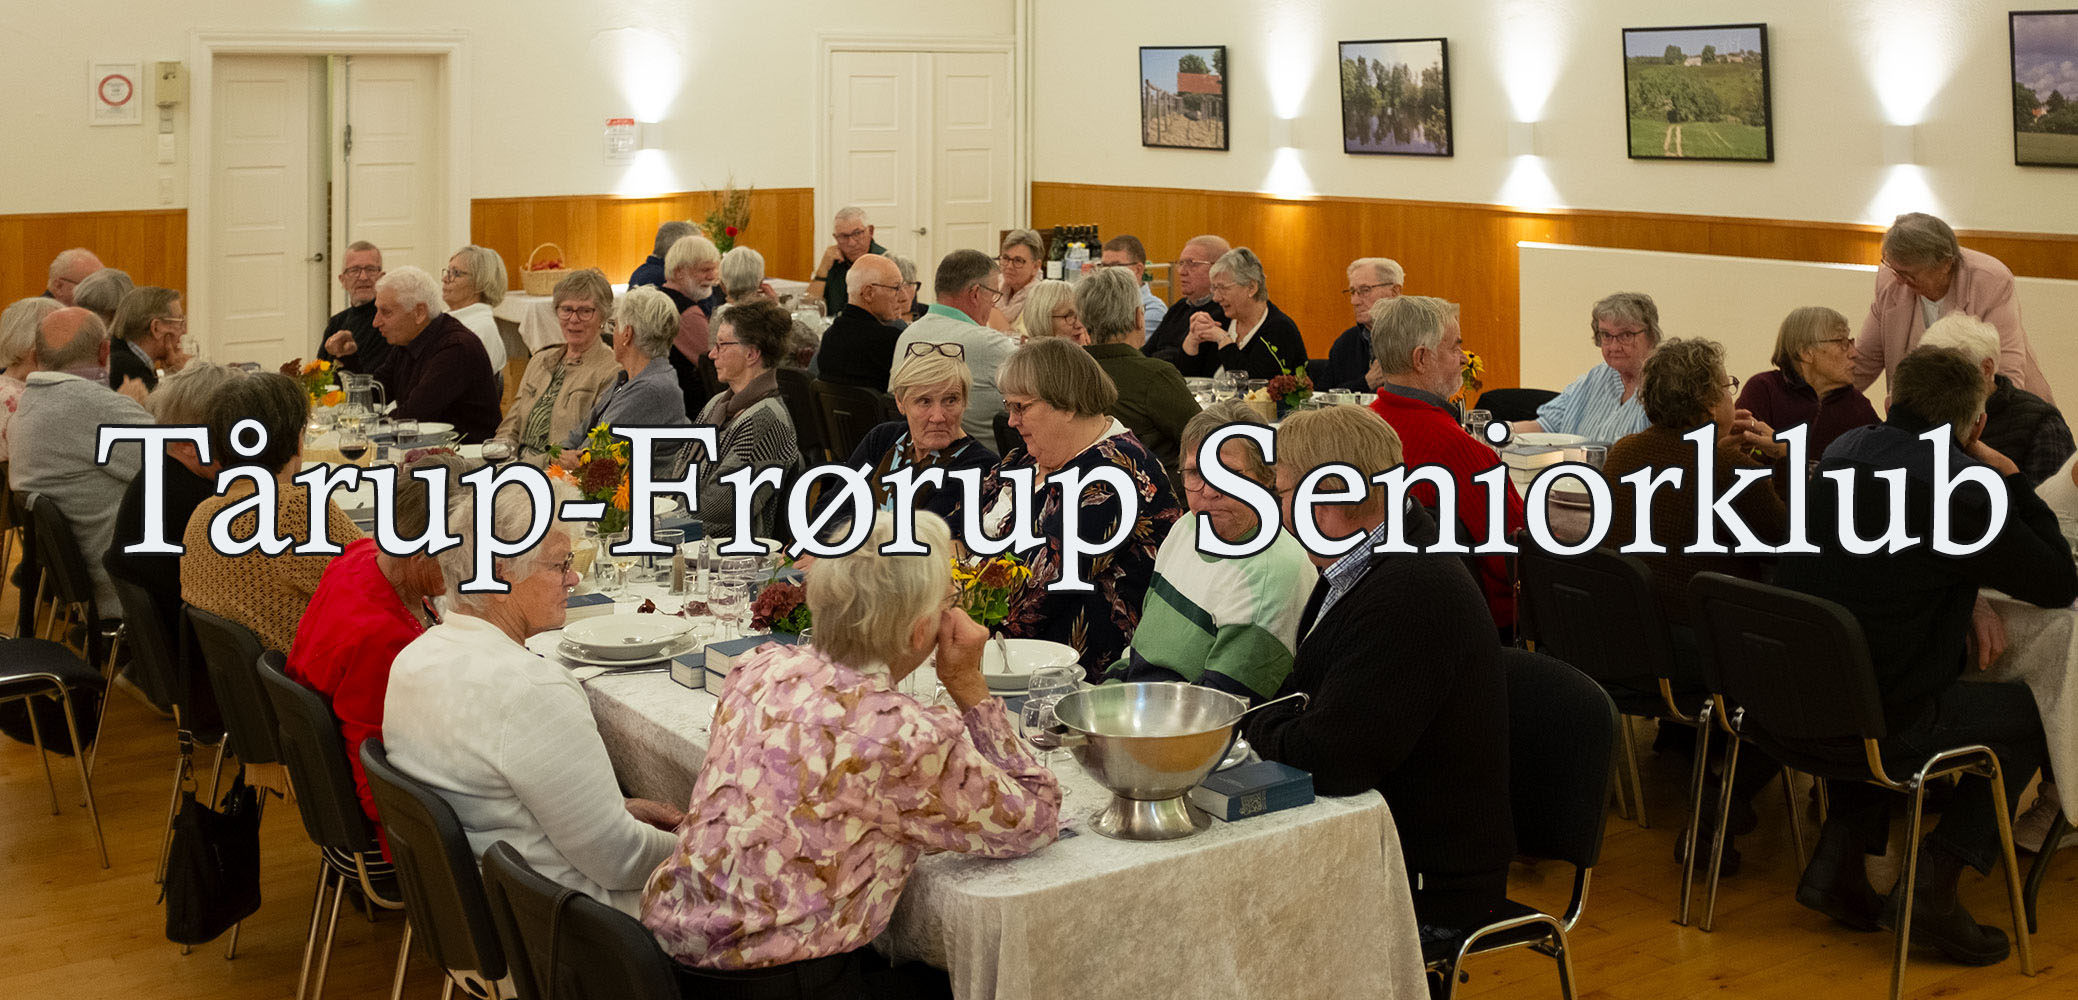 Tårup-Frørup Seniorklub